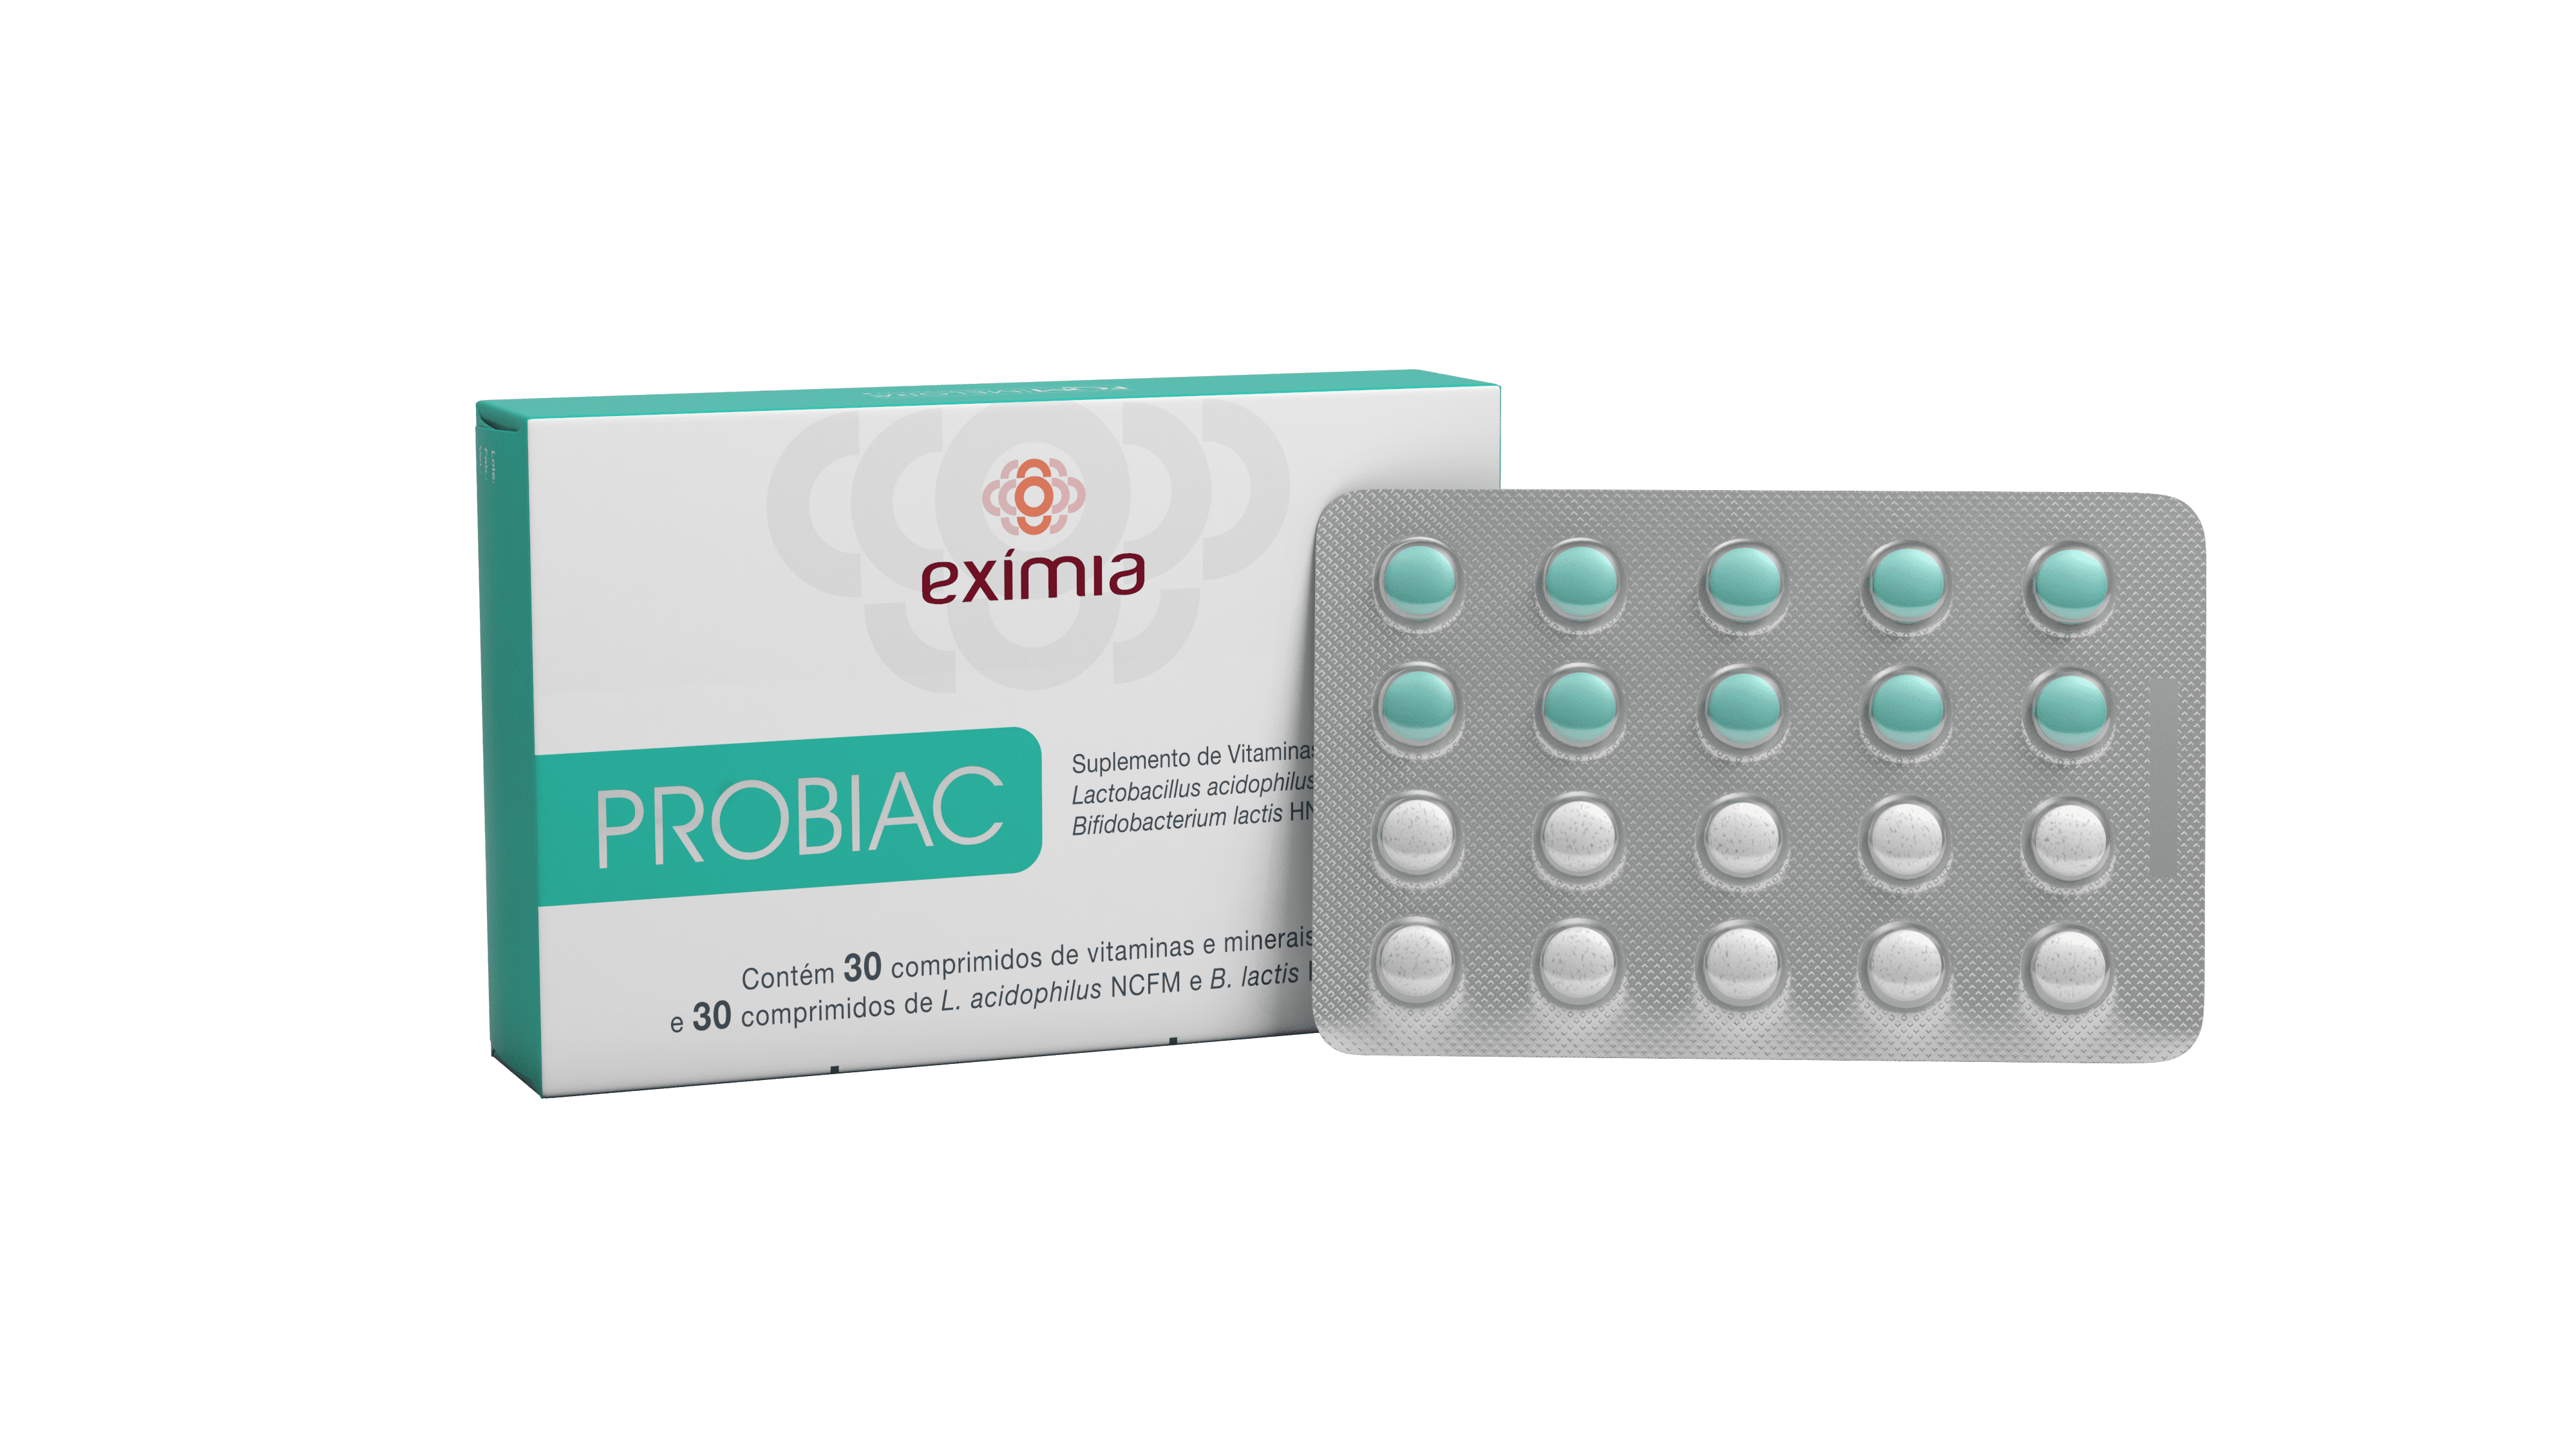 Portal aboutFarma: Exímia Probiac é o primeiro nutracêutico que complementa o cuidado da acne